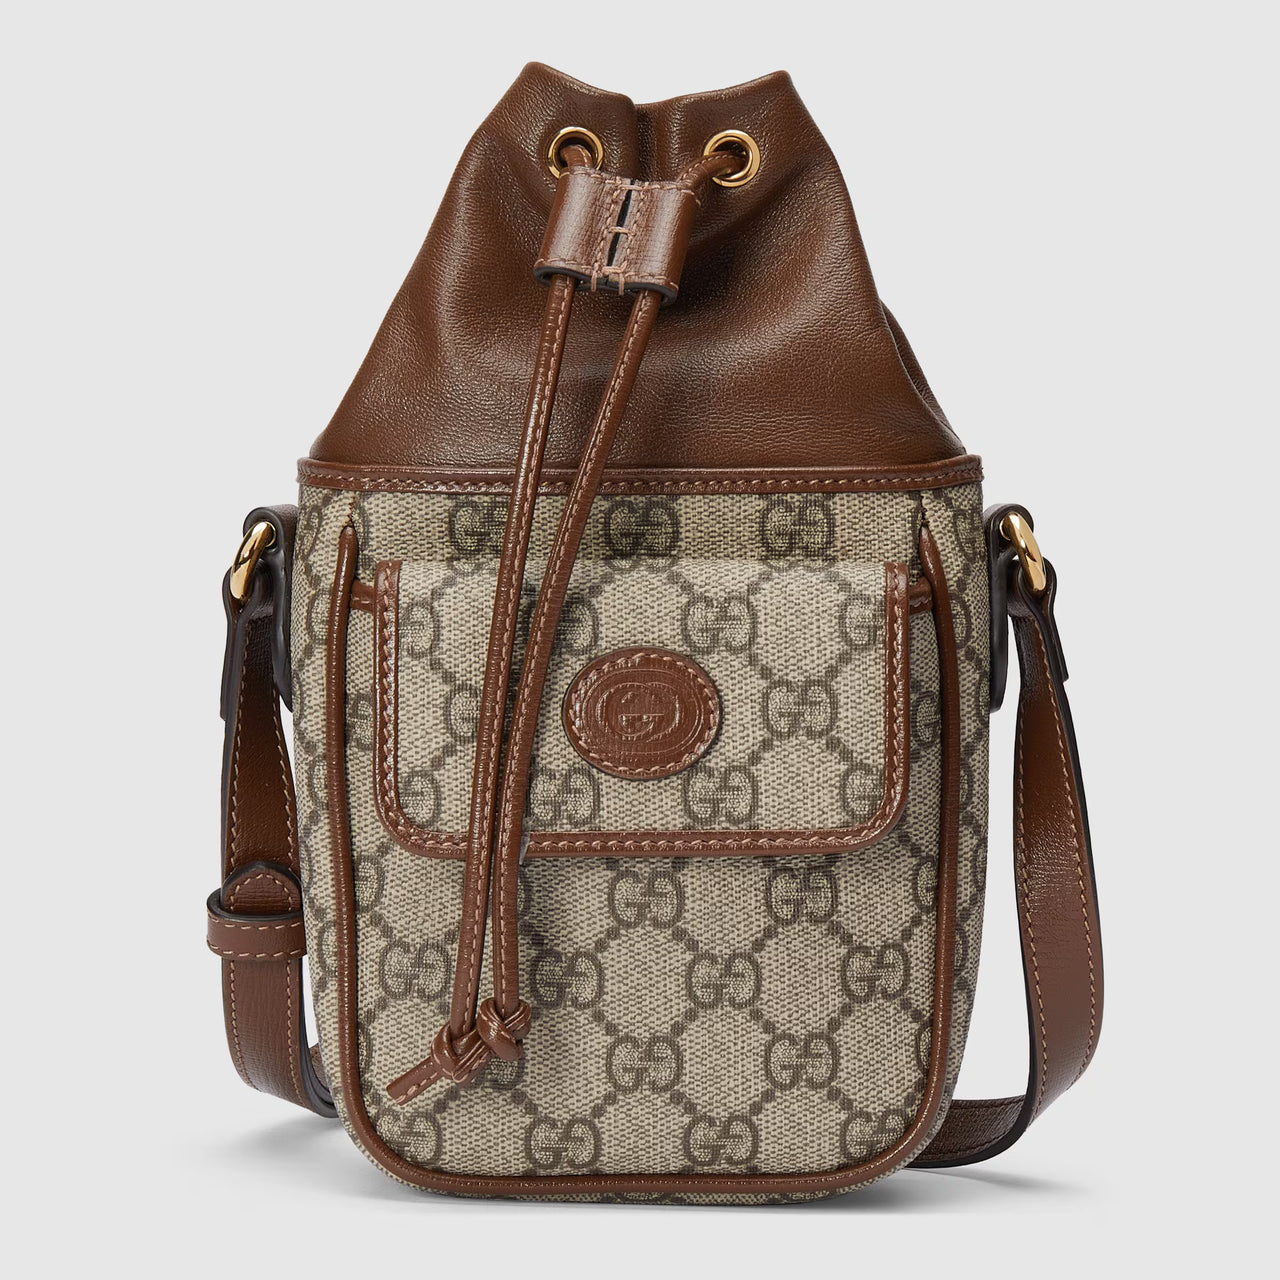 Gucci GG Mini Bucket Bag with Interlocking G (Beige & Ebony)